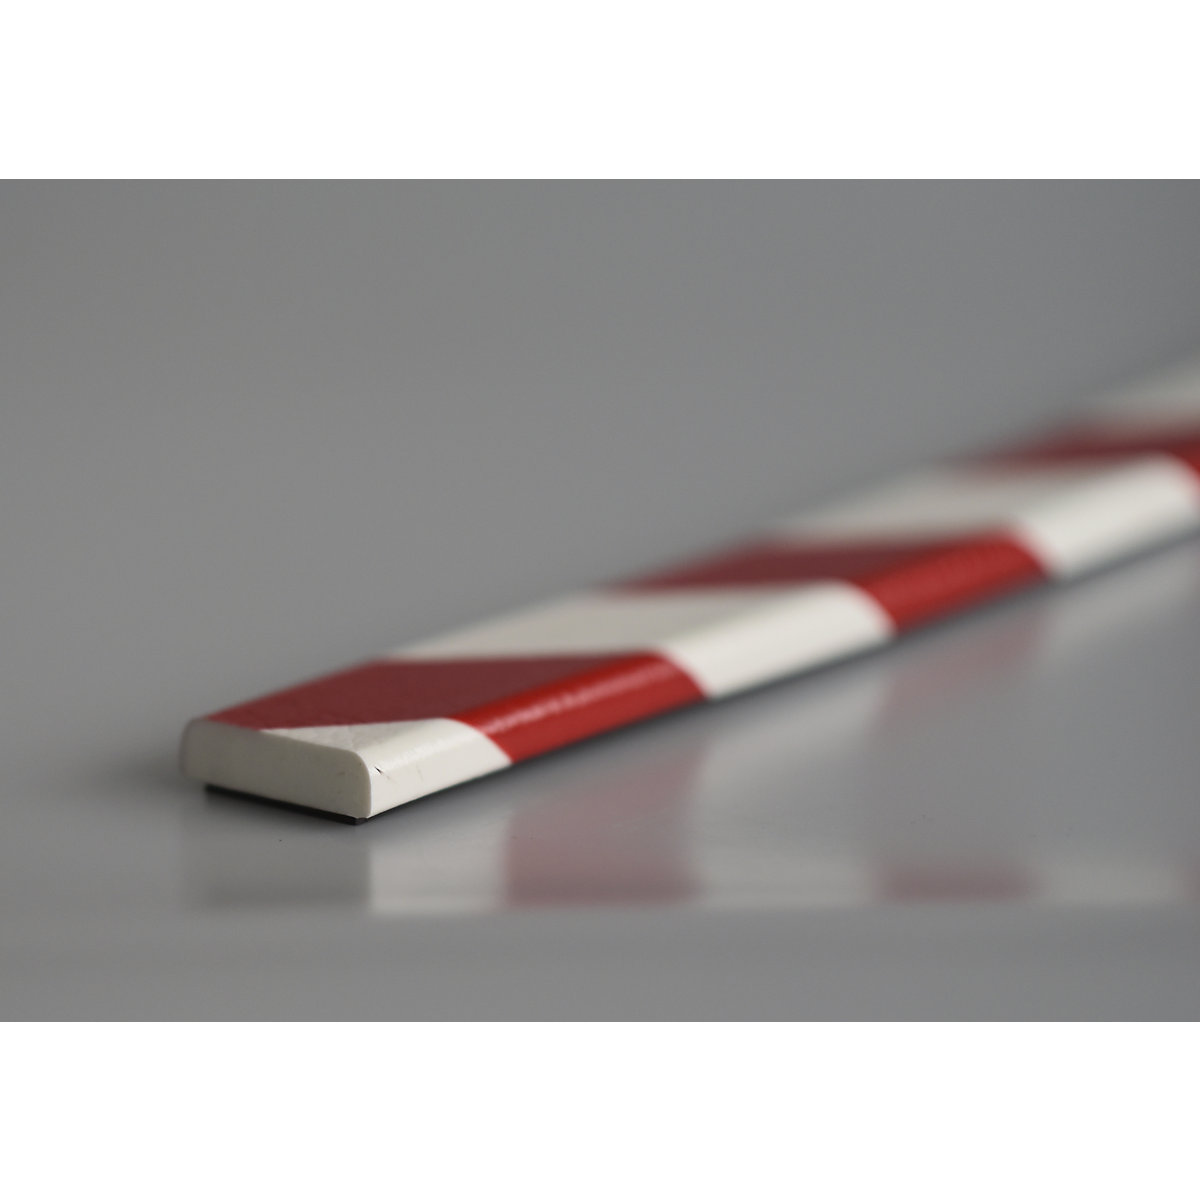 Knuffi®-oppervlaktebescherming – SHG, type F, stuk van 1 m, rood/wit, magneethoudend-20